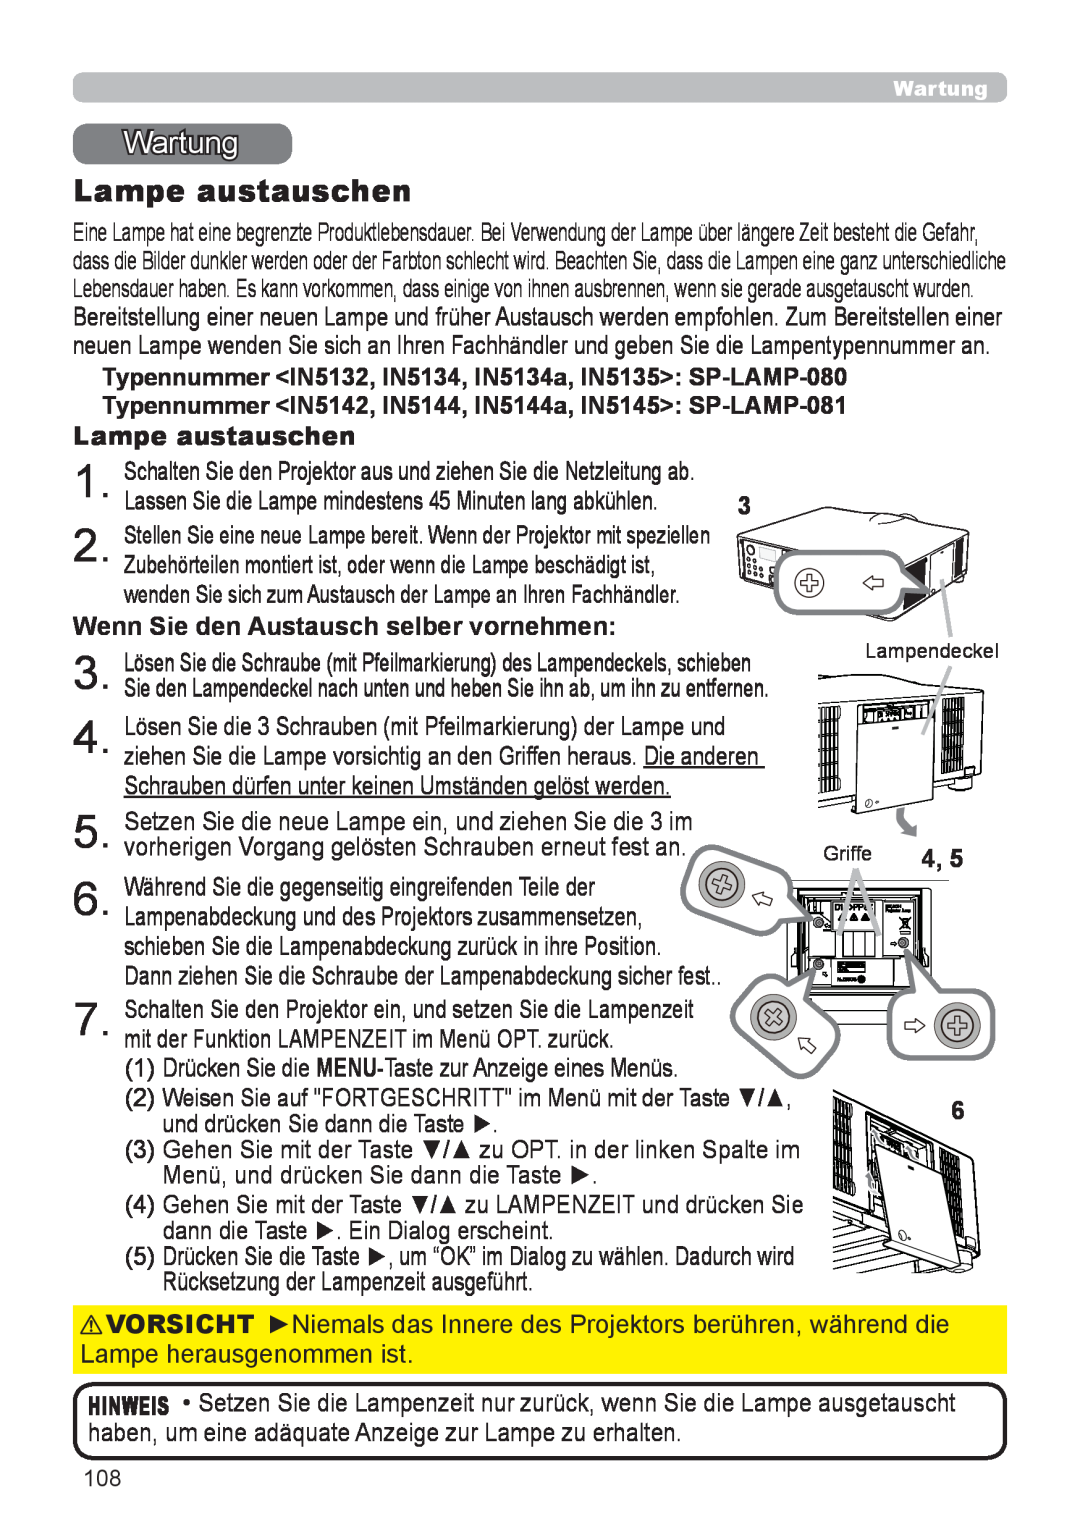 InFocus user manual Wartung, Lampe austauschen, Typennummer IN5132, IN5134, IN5134a, IN5135 SP-LAMP-080 